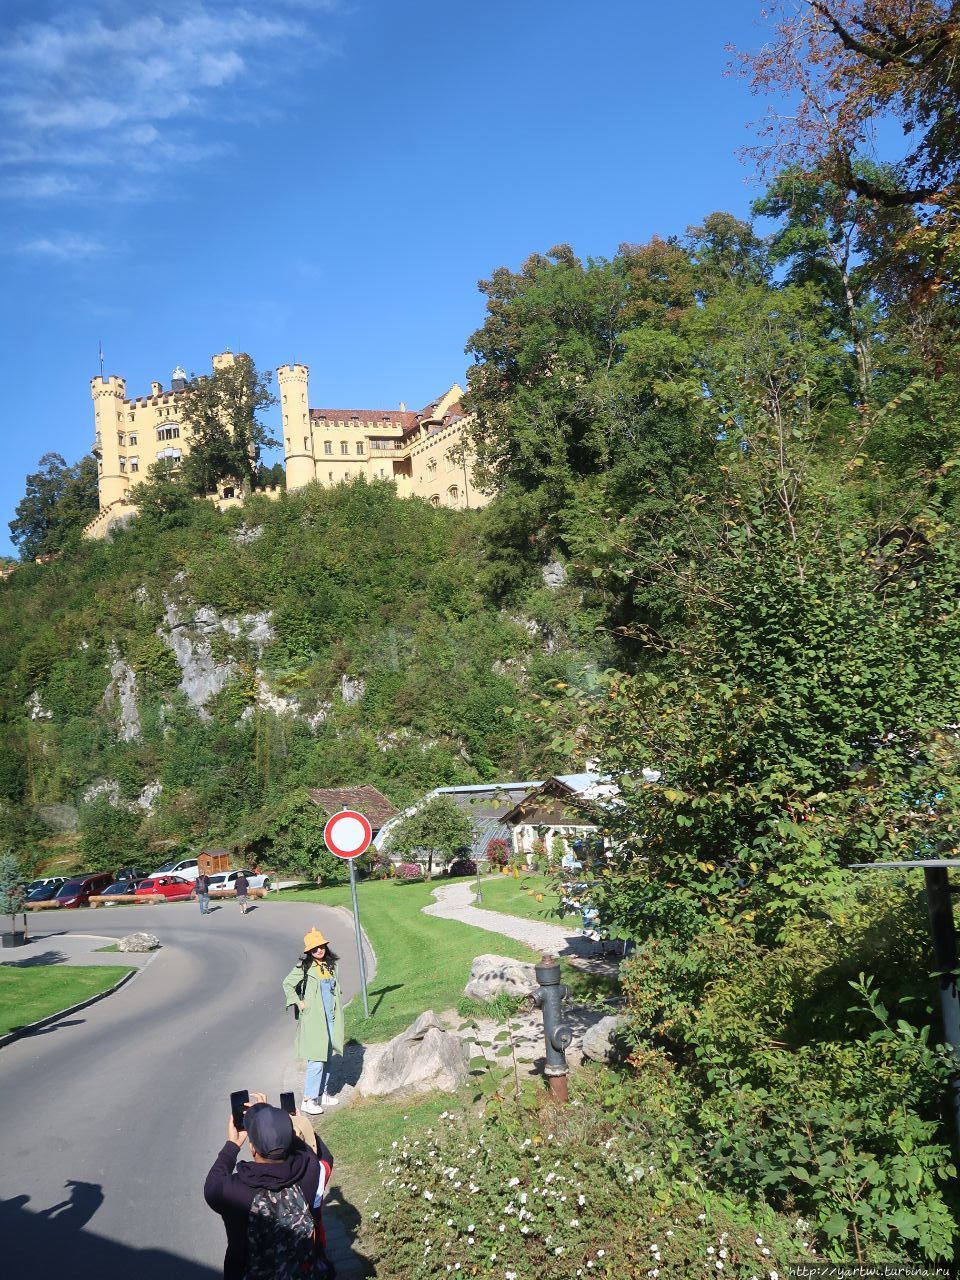 При въезде в Швангау вам откроется вид на замок Хоэншвангау (высокий лебединый край). Поэтому Швангау часто называют Лебединой деревней или деревней королевских замков. Швангау, Германия